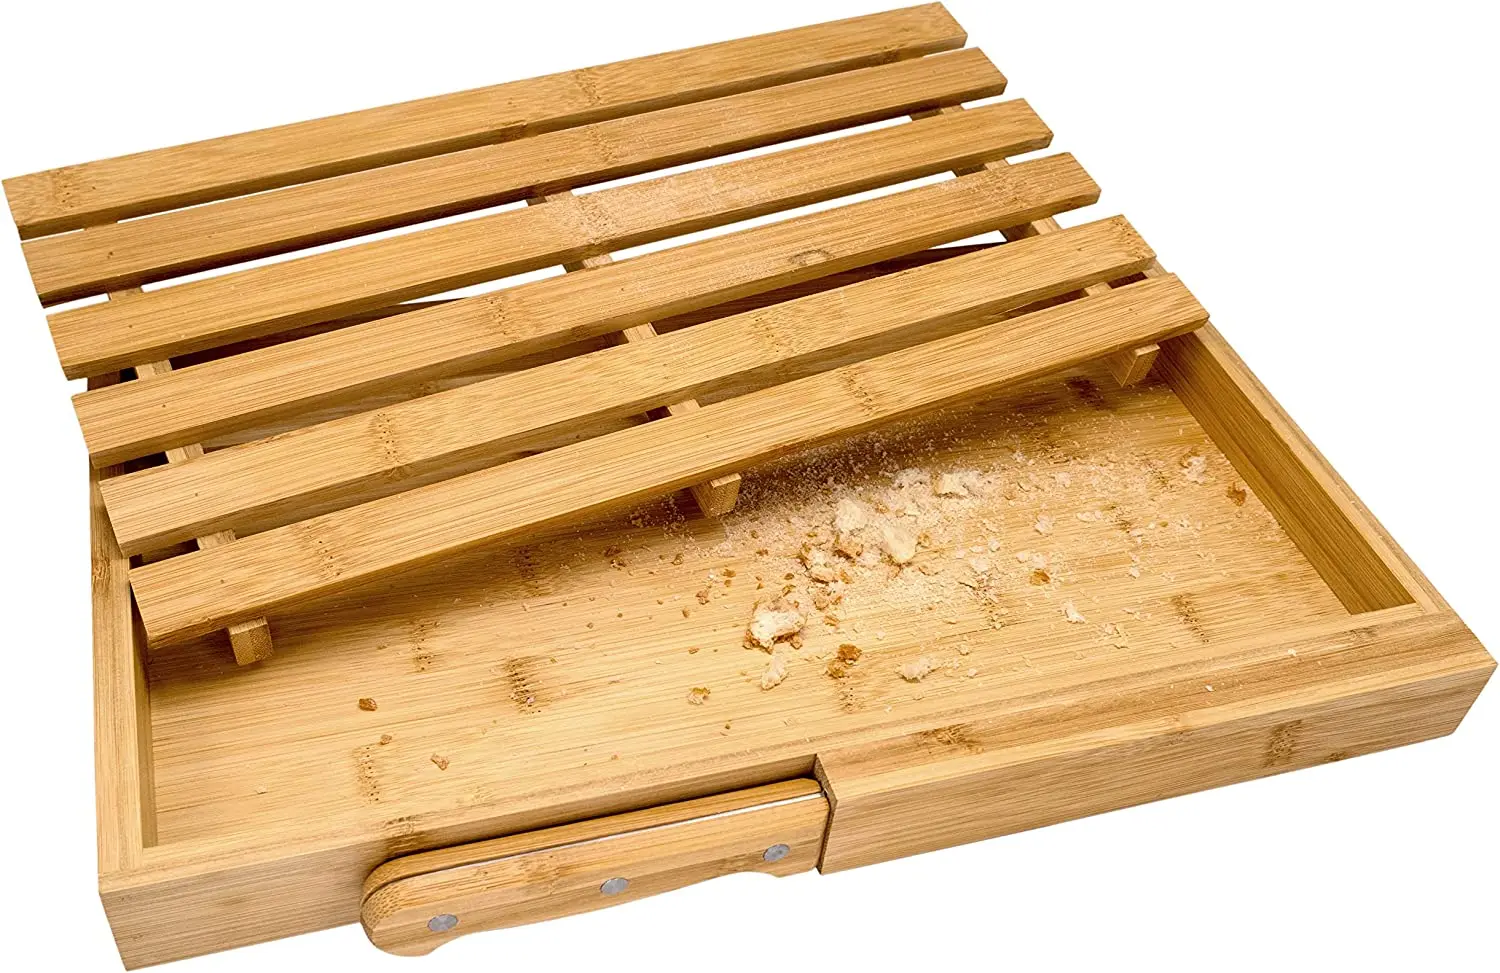 

FIH 939 Planche à découper pour le pain bois de bambou avec couteau bois de bambou, couteau acier inoxydable, grille de bas